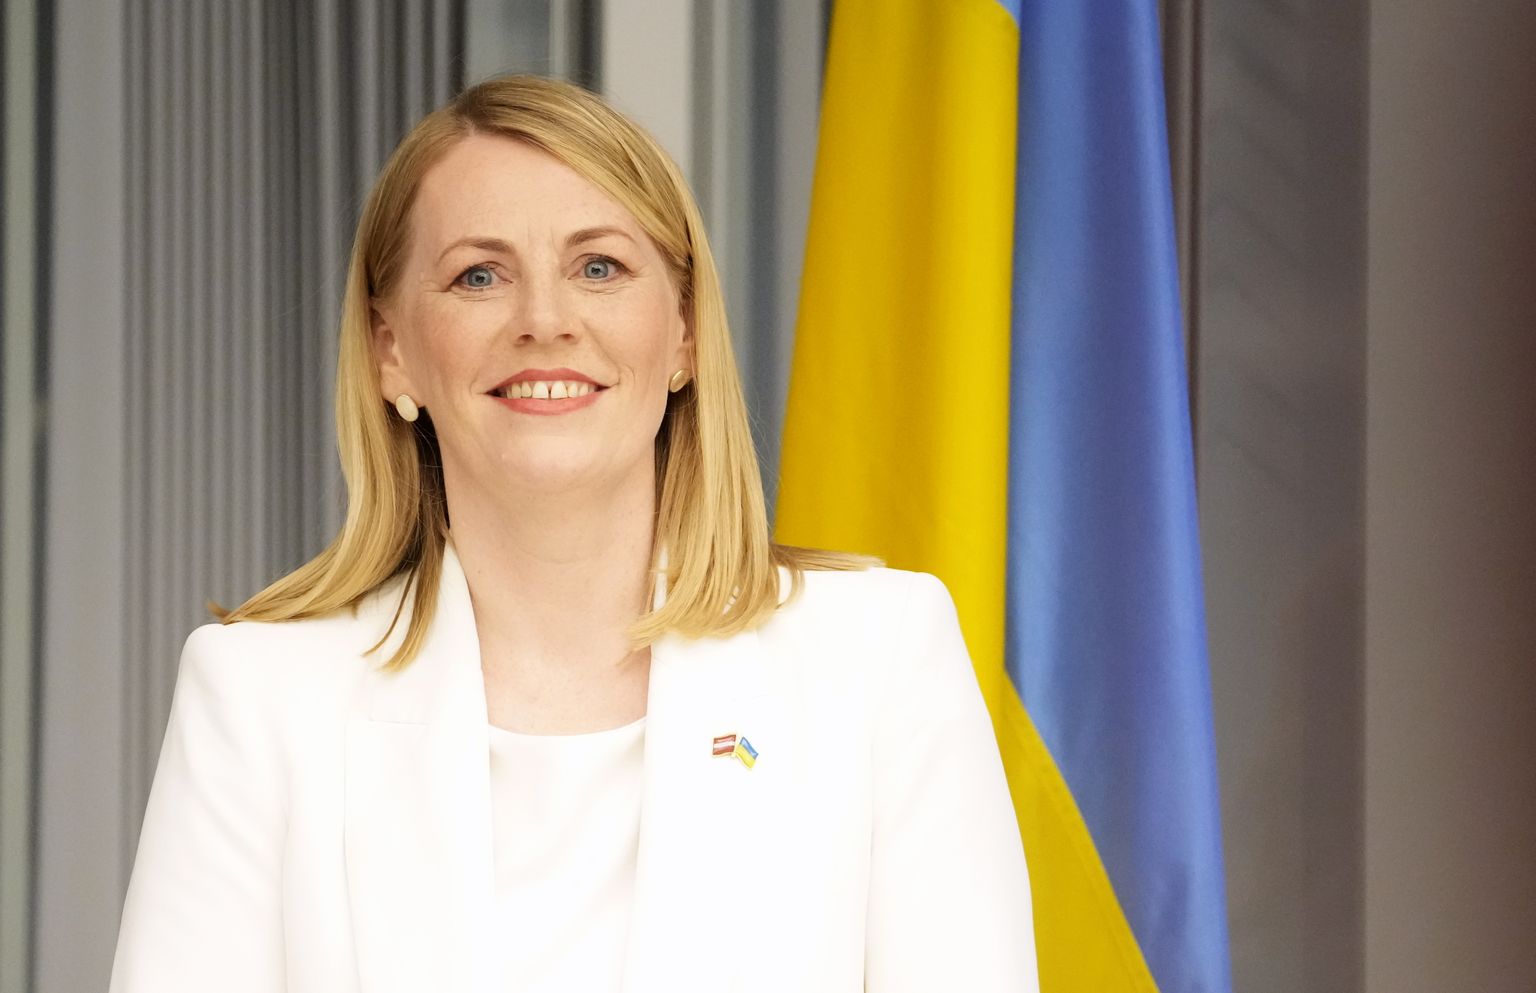 Элина Пинто, кандидат в президенты от партии "Прогрессивные"